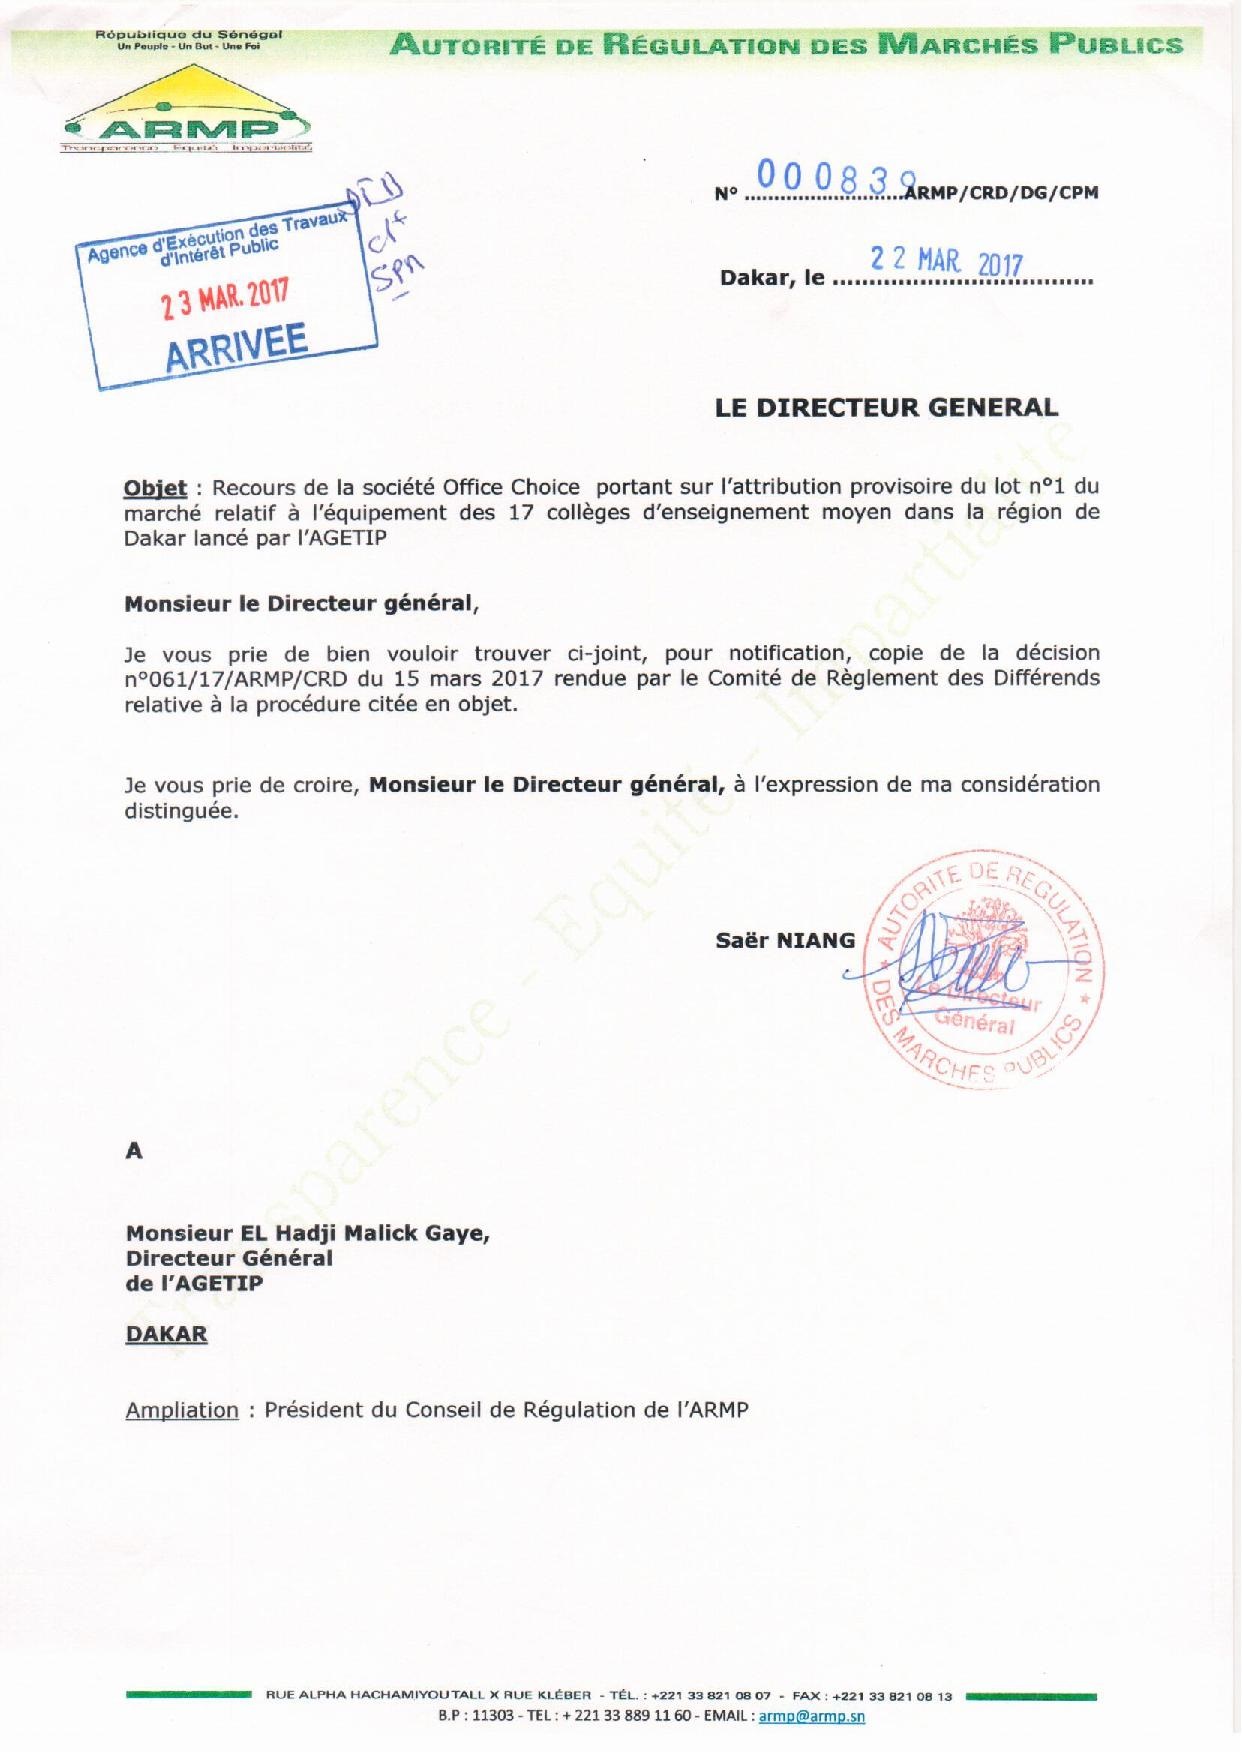 Exclusif : AGETIP Office Choice,  L'ARMP a tranché l'appel d'offres relatif à l'équipement de 17 collèges de Dakar